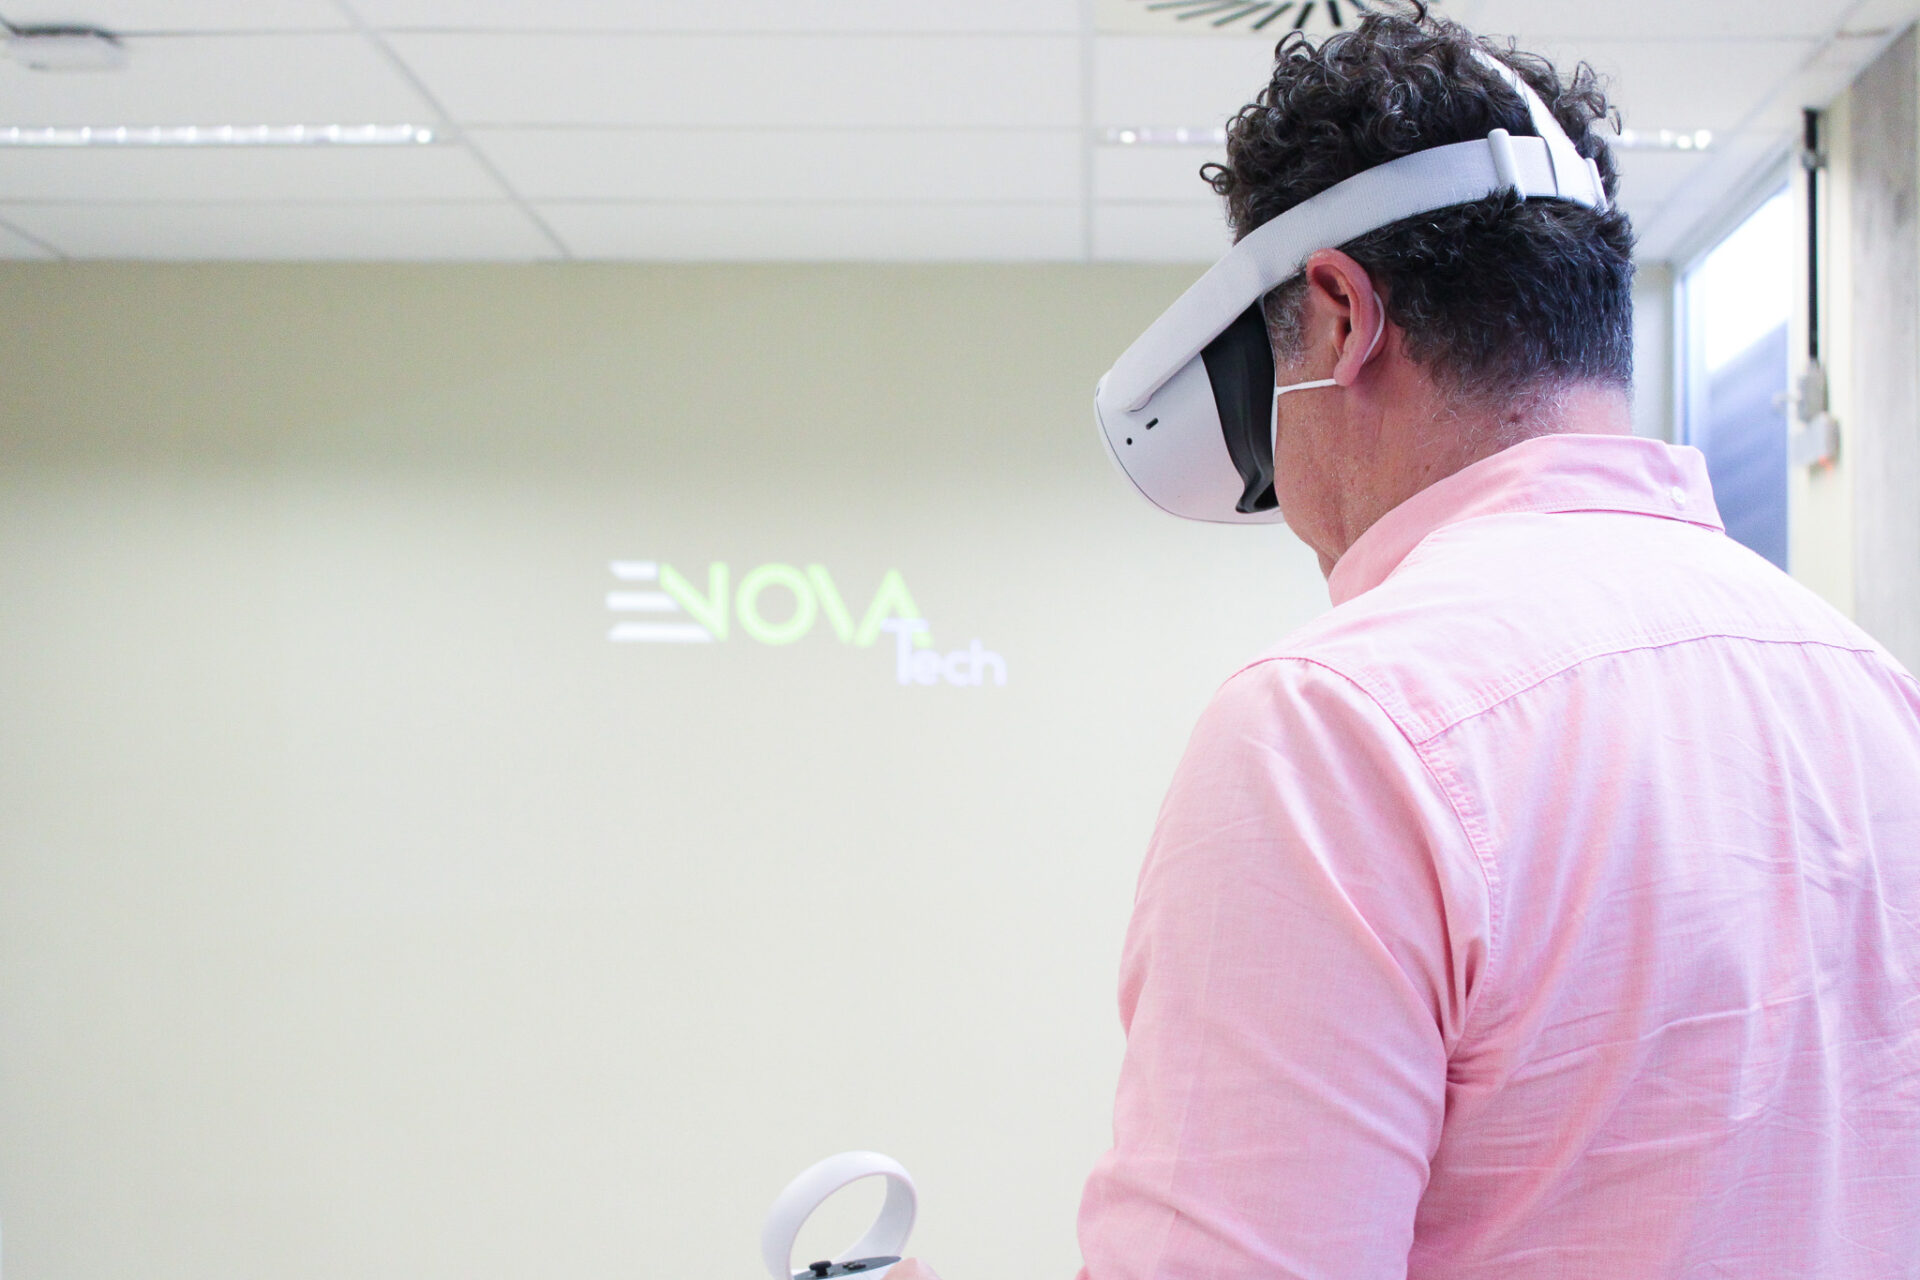 Lançamento eNOVATech, a Educorp avança no uso da tecnologia virtual